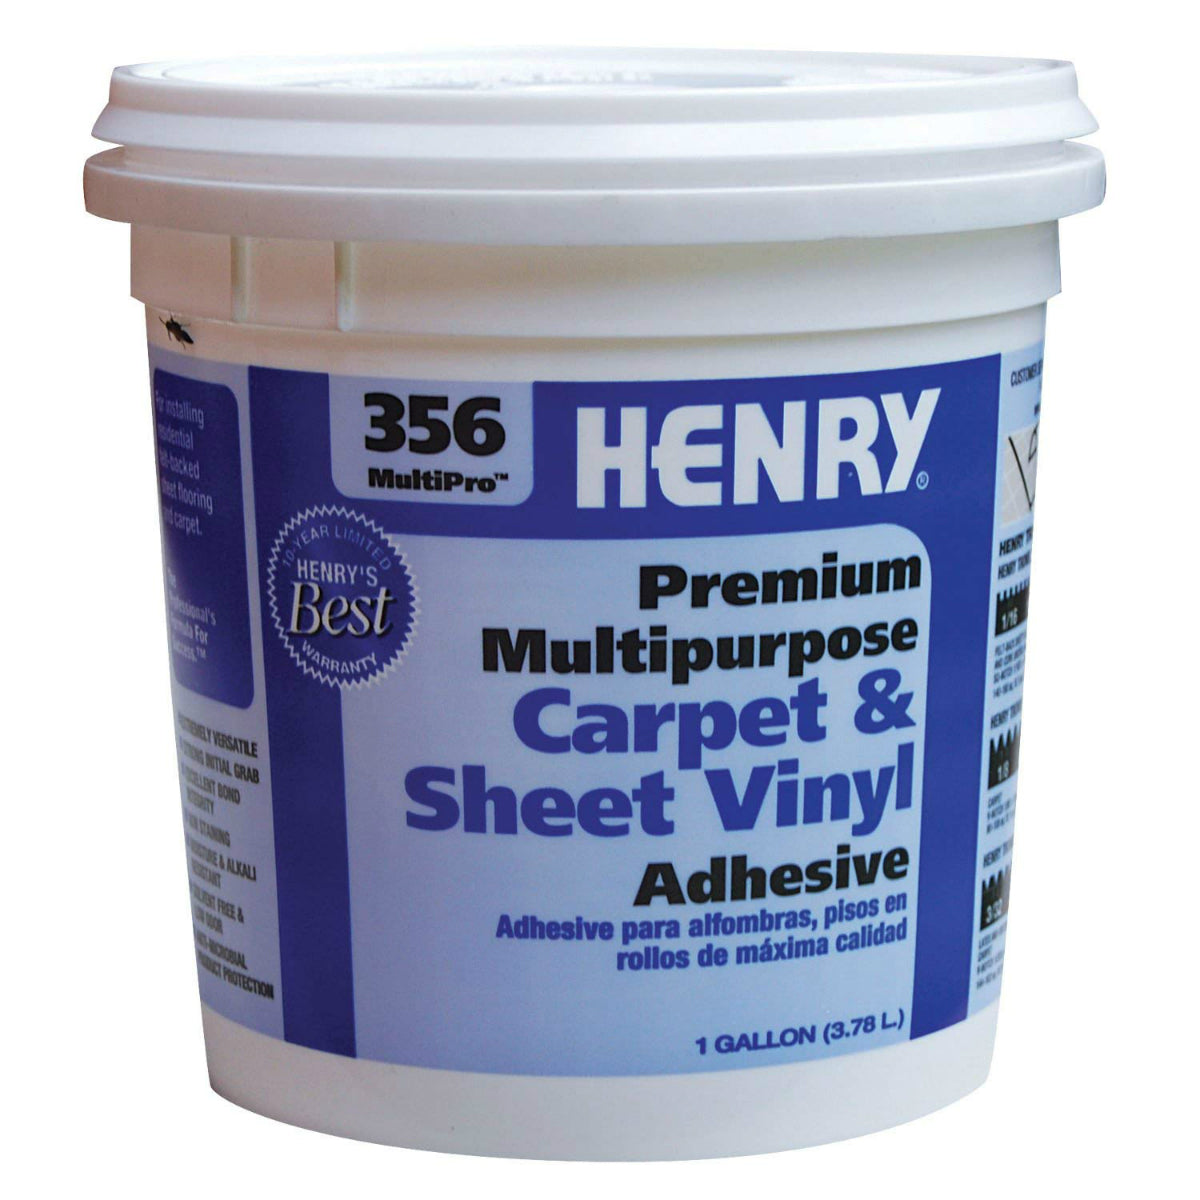 HENRY 12072 MultiPro Premium Multipurpose Flooring Adhesive, #356, 1-Quart